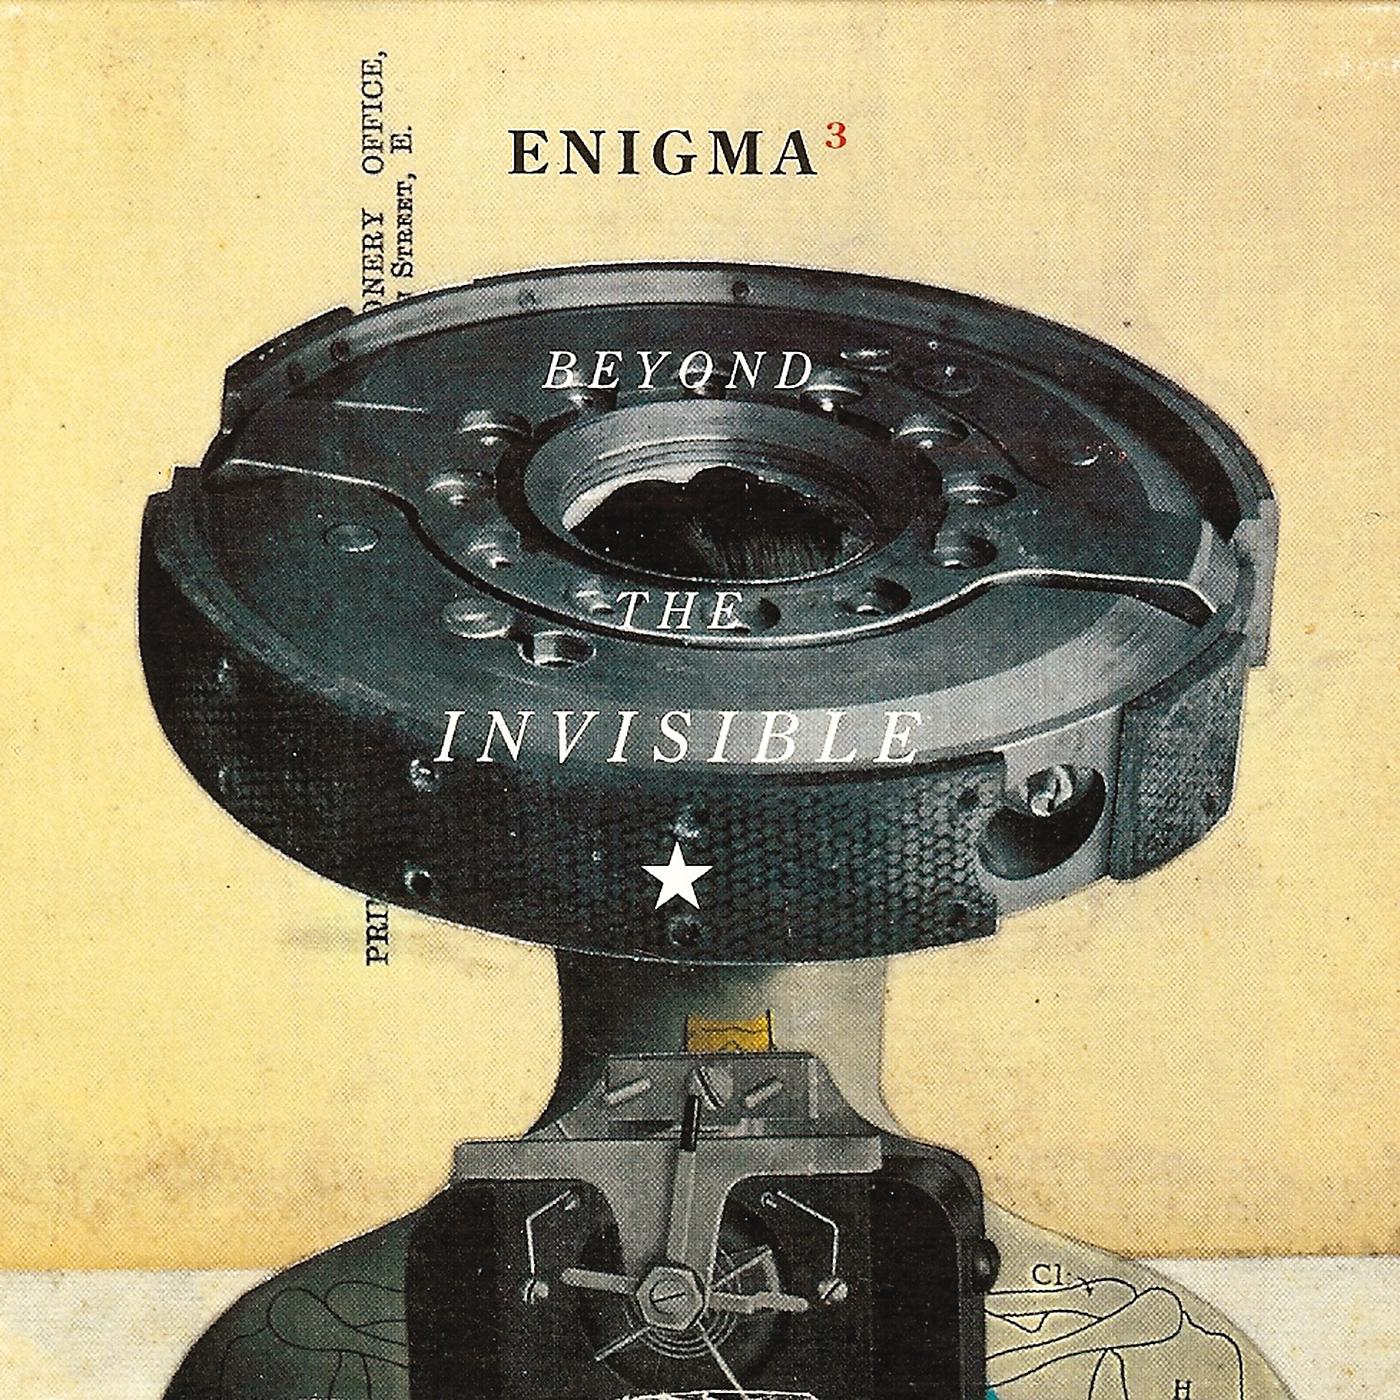 Roi est. Enigma 1996. Enigma - Beyond the Invisible (1996). Enigma 1990. Enigma Beyond the Invisible альбом.